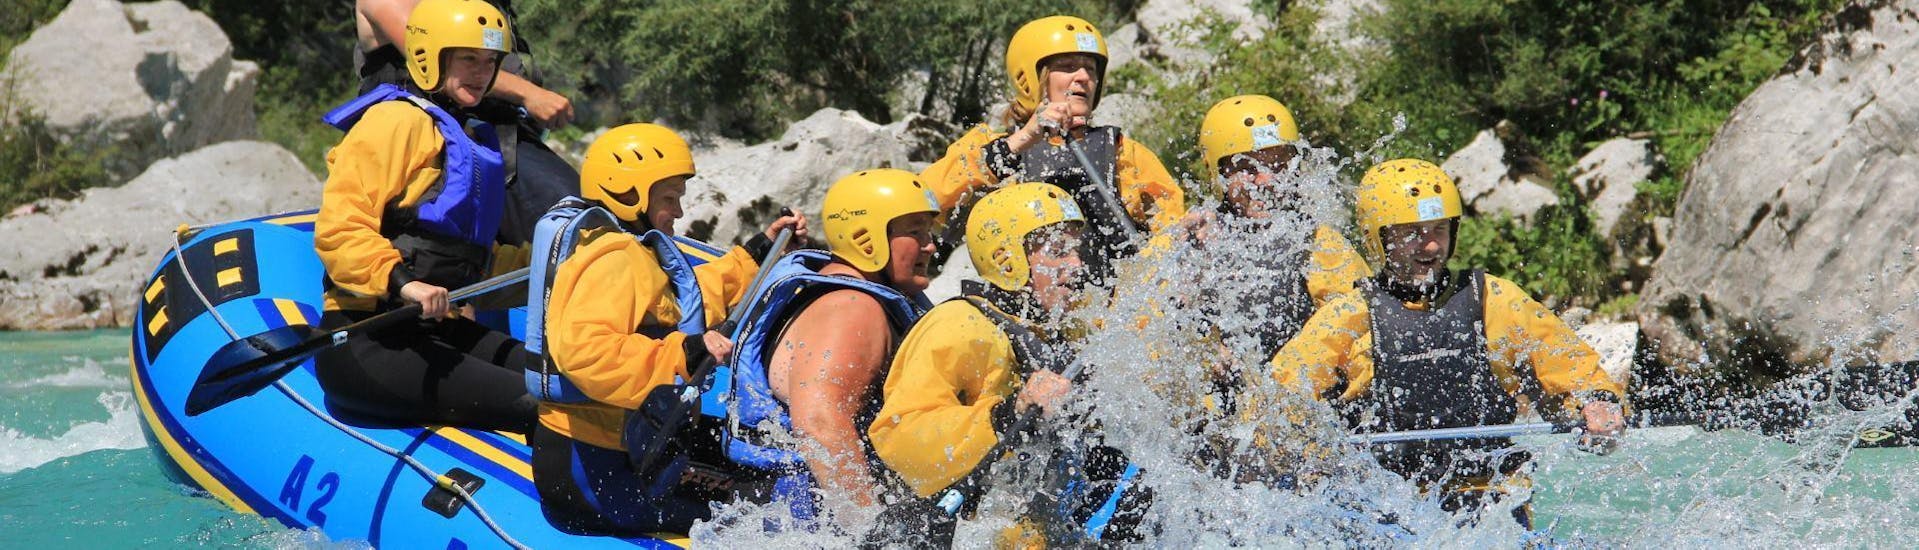 Un grupo de familias se divierte mientras hace Rafting en el río Soča con A2 Rafting Kobarid.